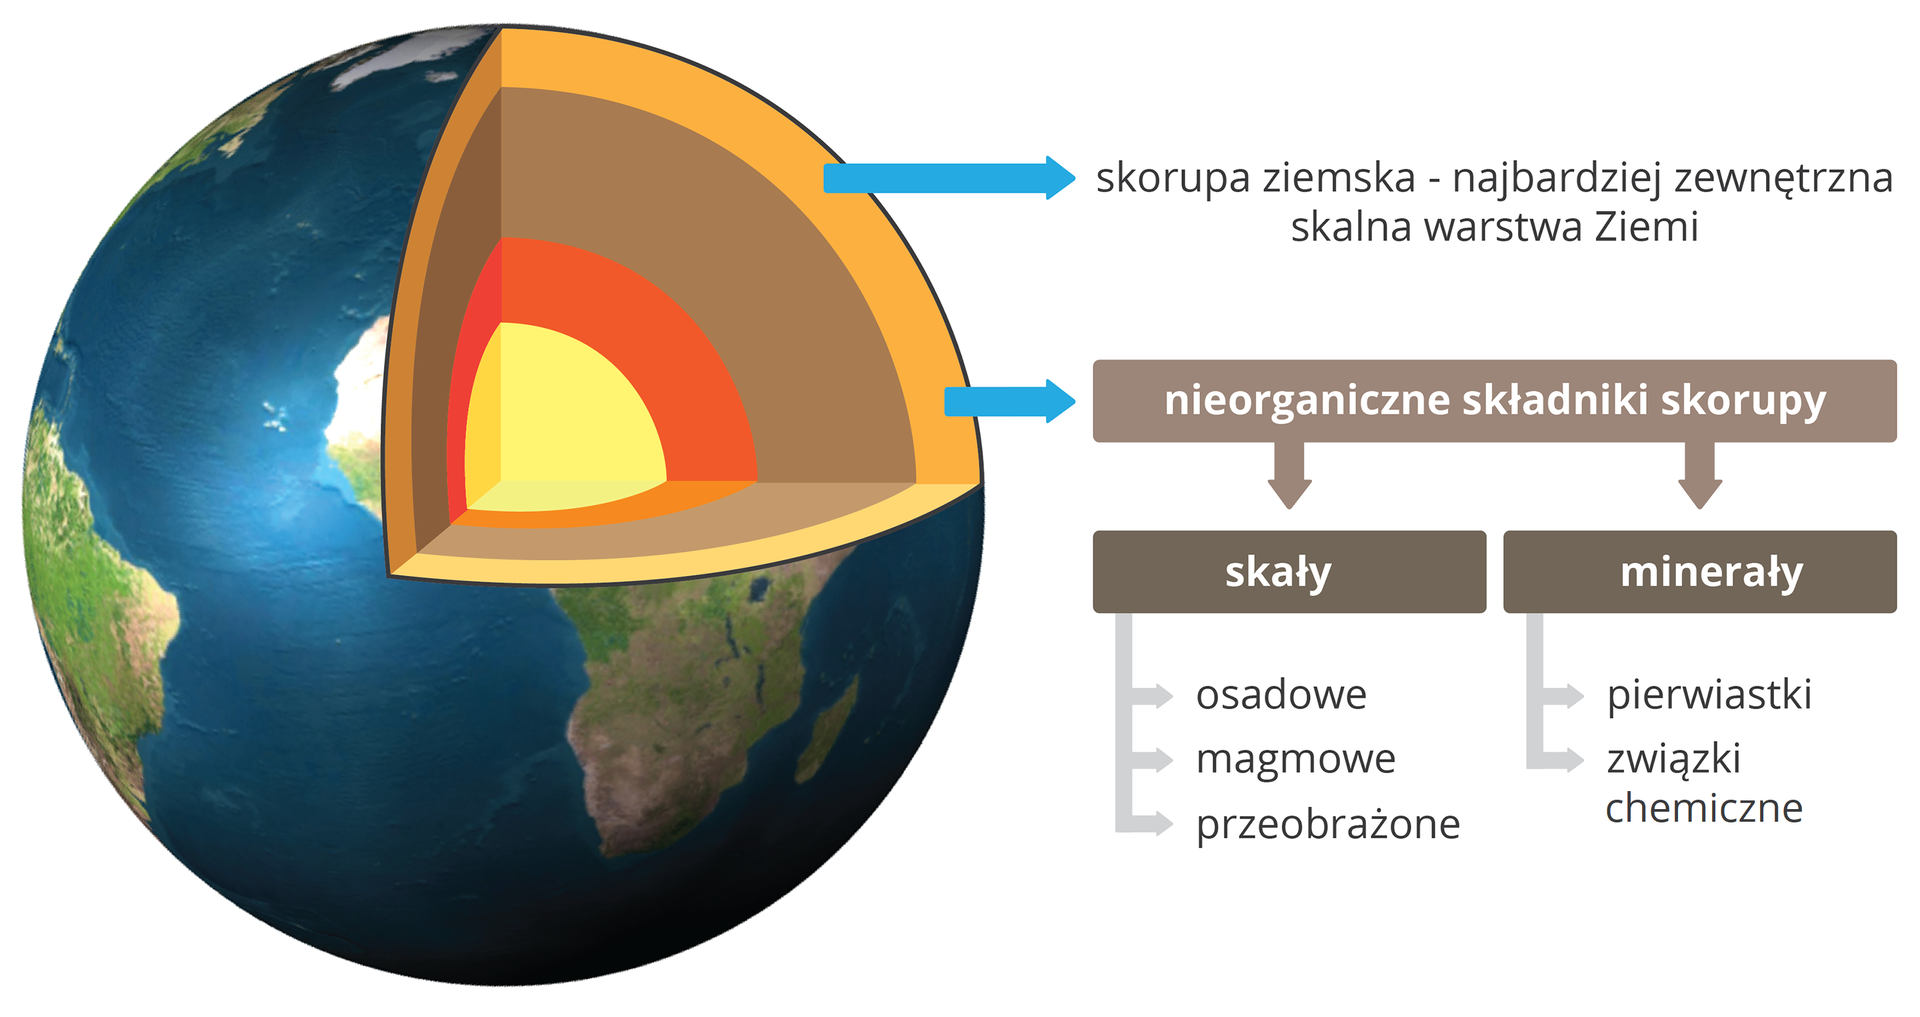 Ilustracja przedstawia nieorganiczne składniki skorupy ziemskiej, która jest najbardziej zewnętrzną skalną warstwą Ziemi. Do nieorganicznych składników skorupy należą skały osadowe, magmowe i przeobrażone, a także minerały czyli pierwiastki lub ich związki chemiczne.